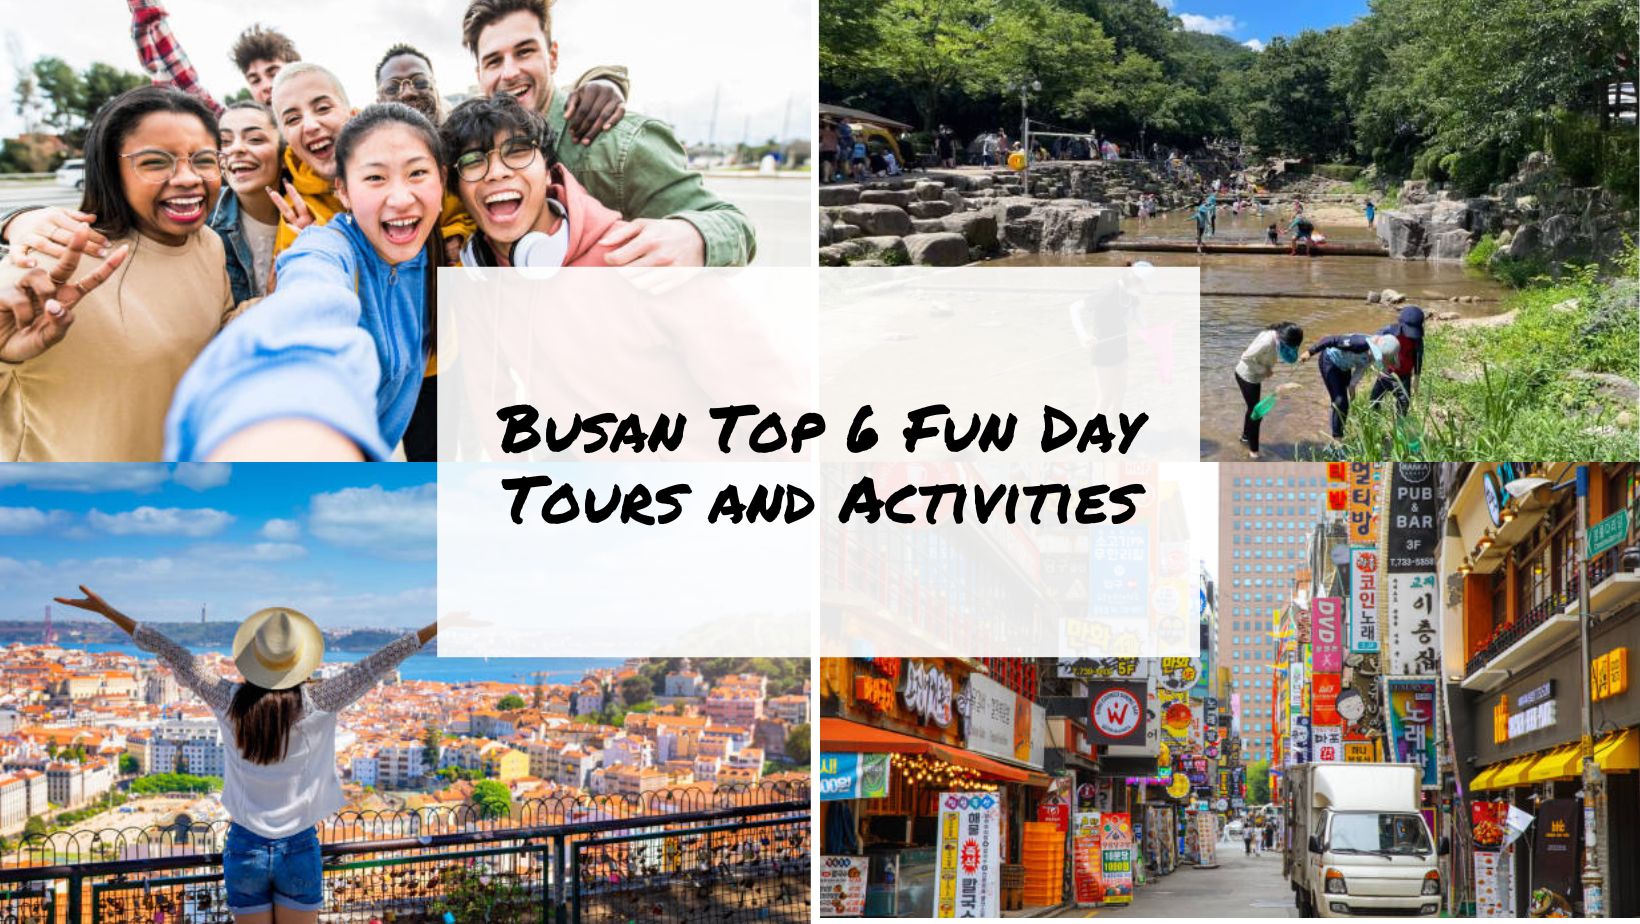 Busan Top 6 Fun Day Tours and Activities